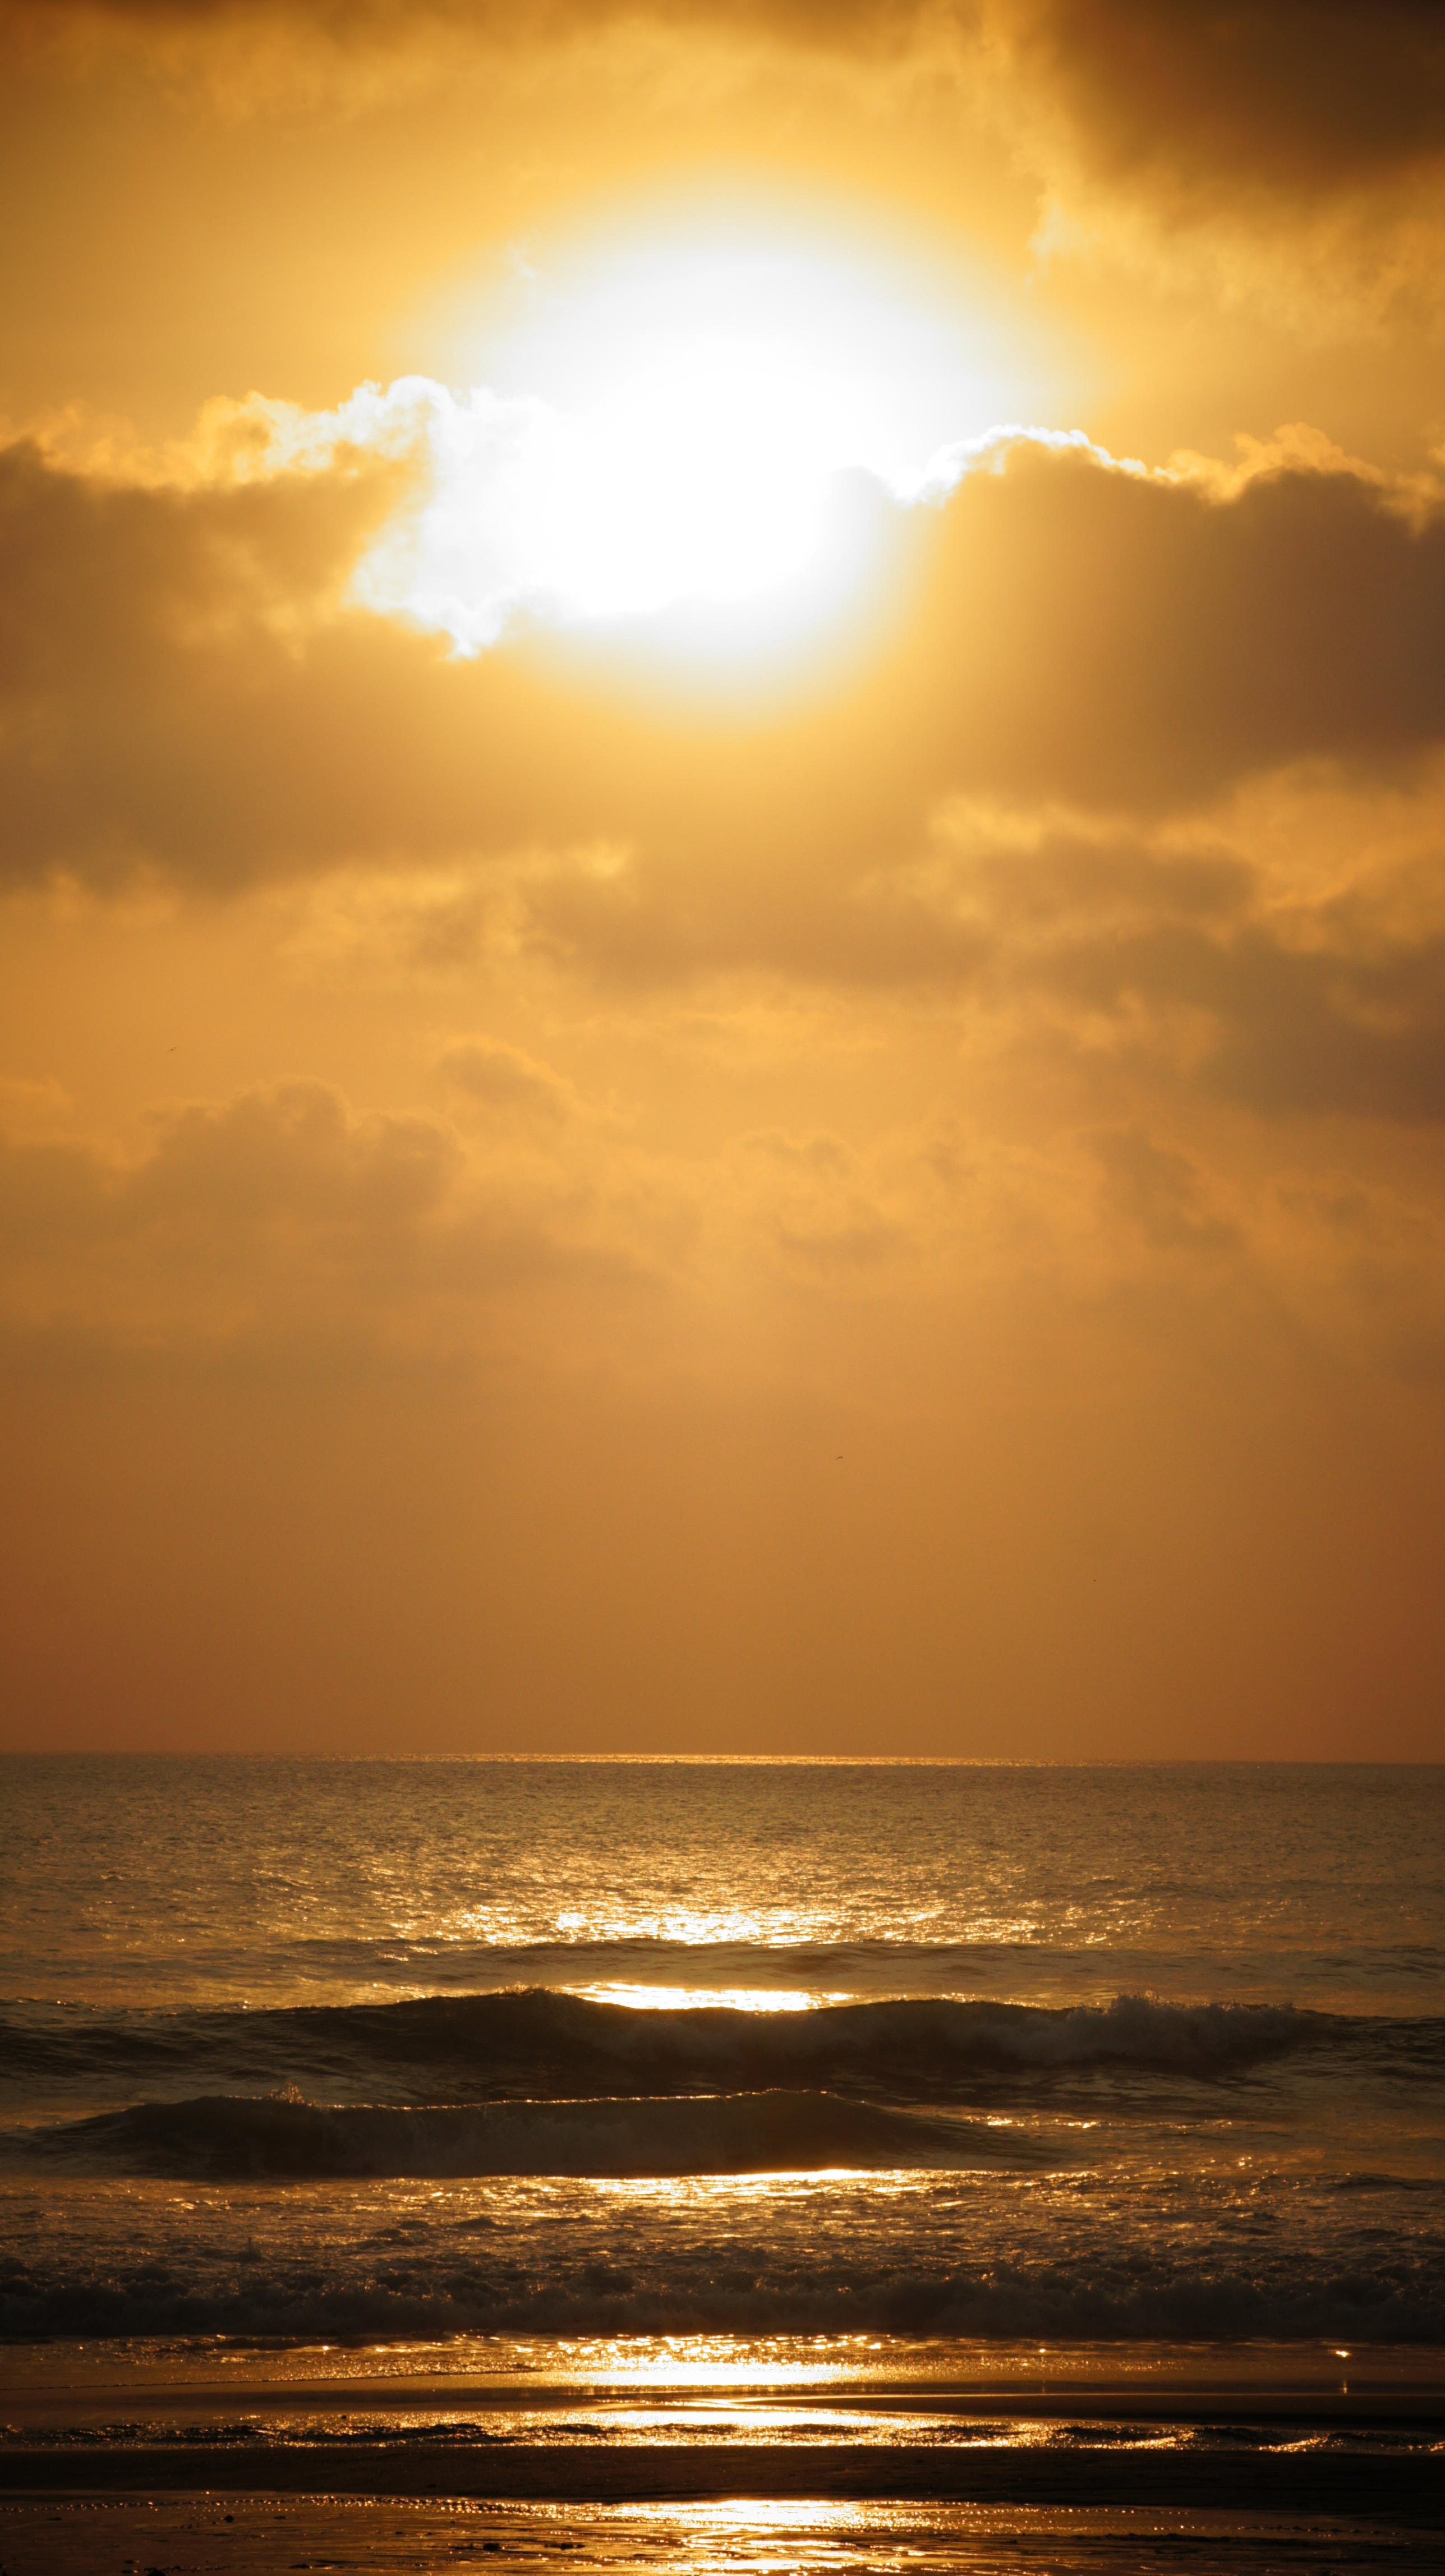 Bali sunset photo